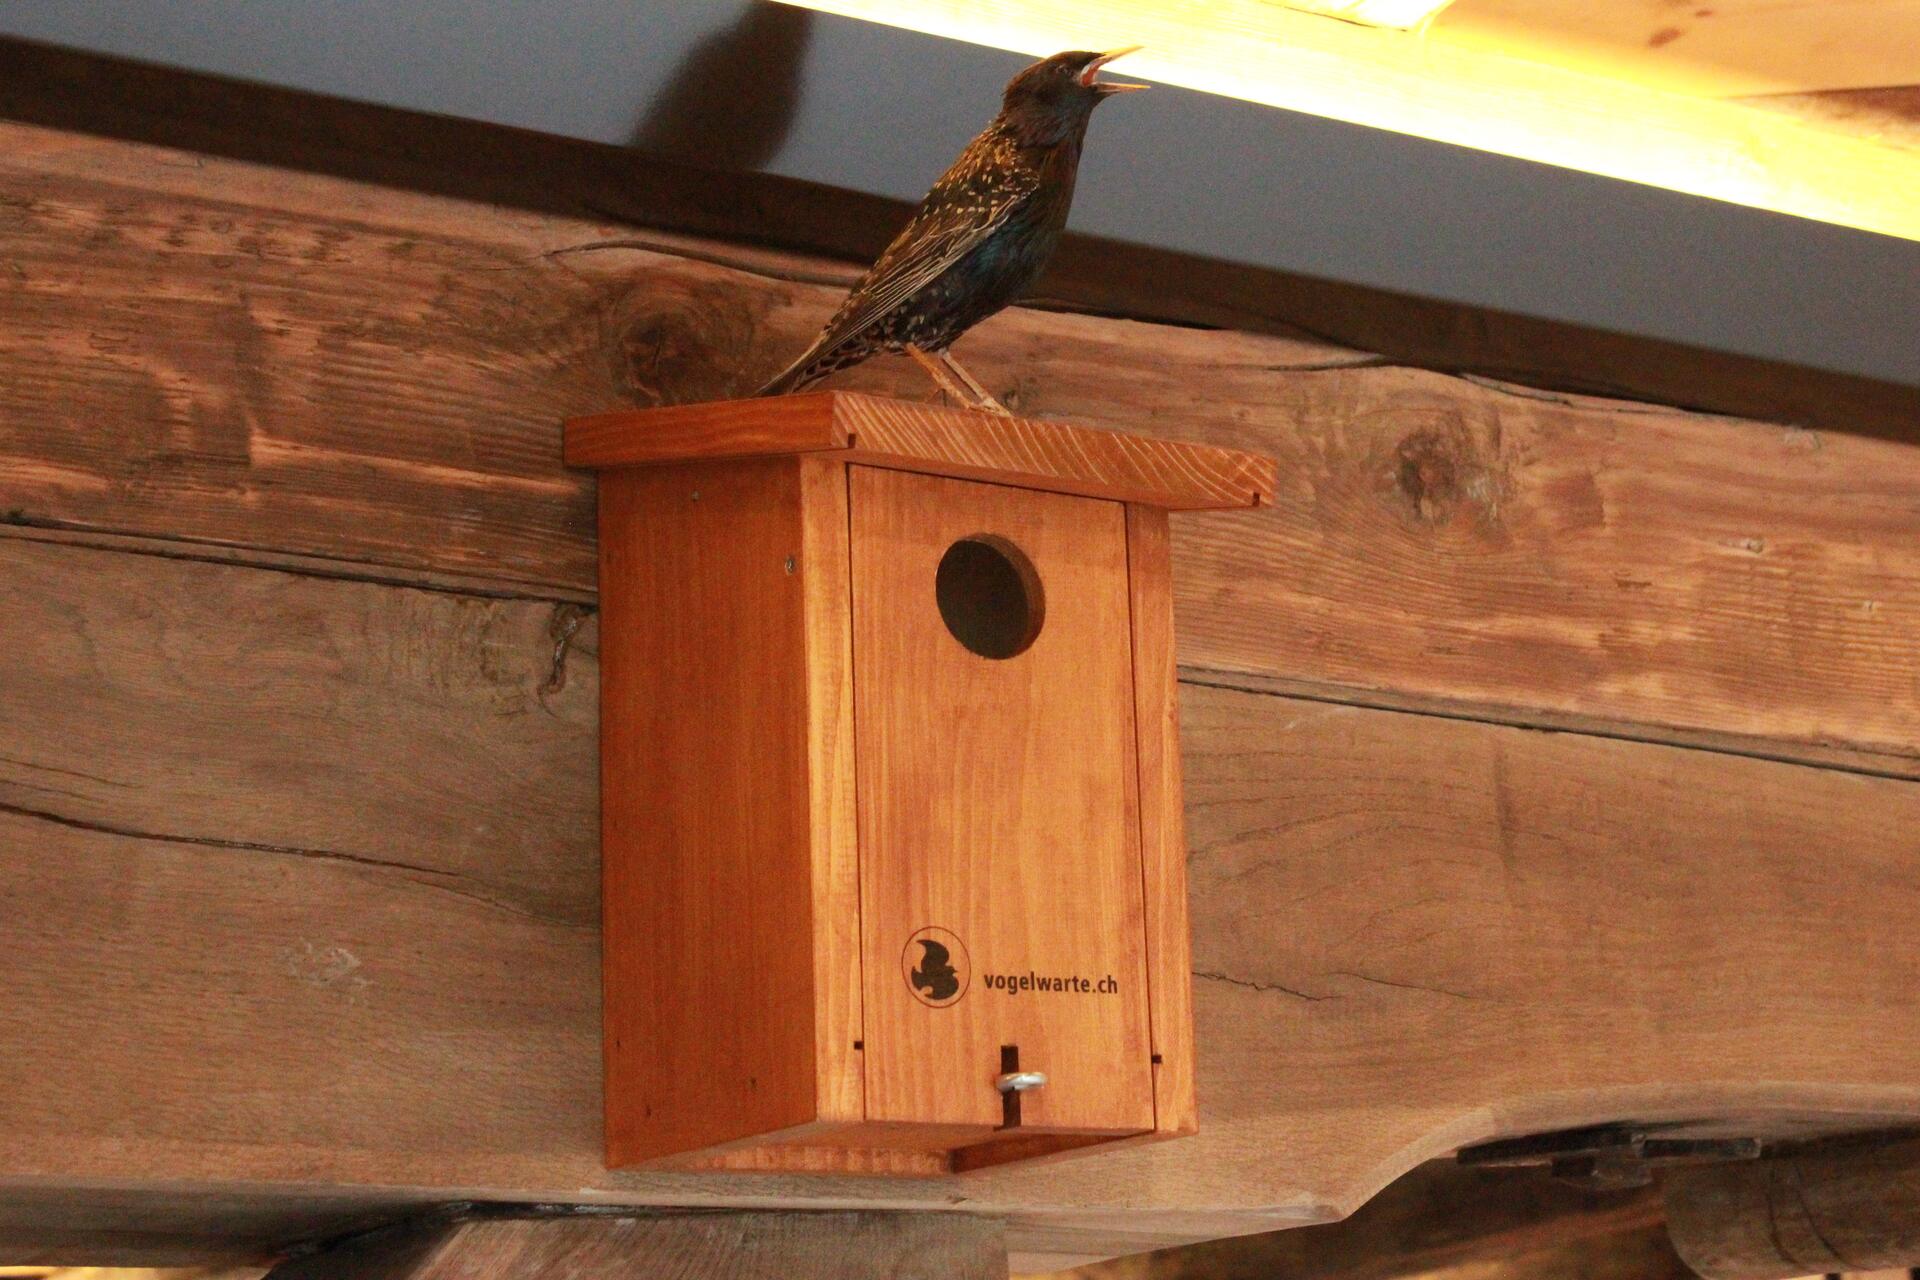 Stazione Ornitologica Svizzera: un ricovero per il nido degli uccelli